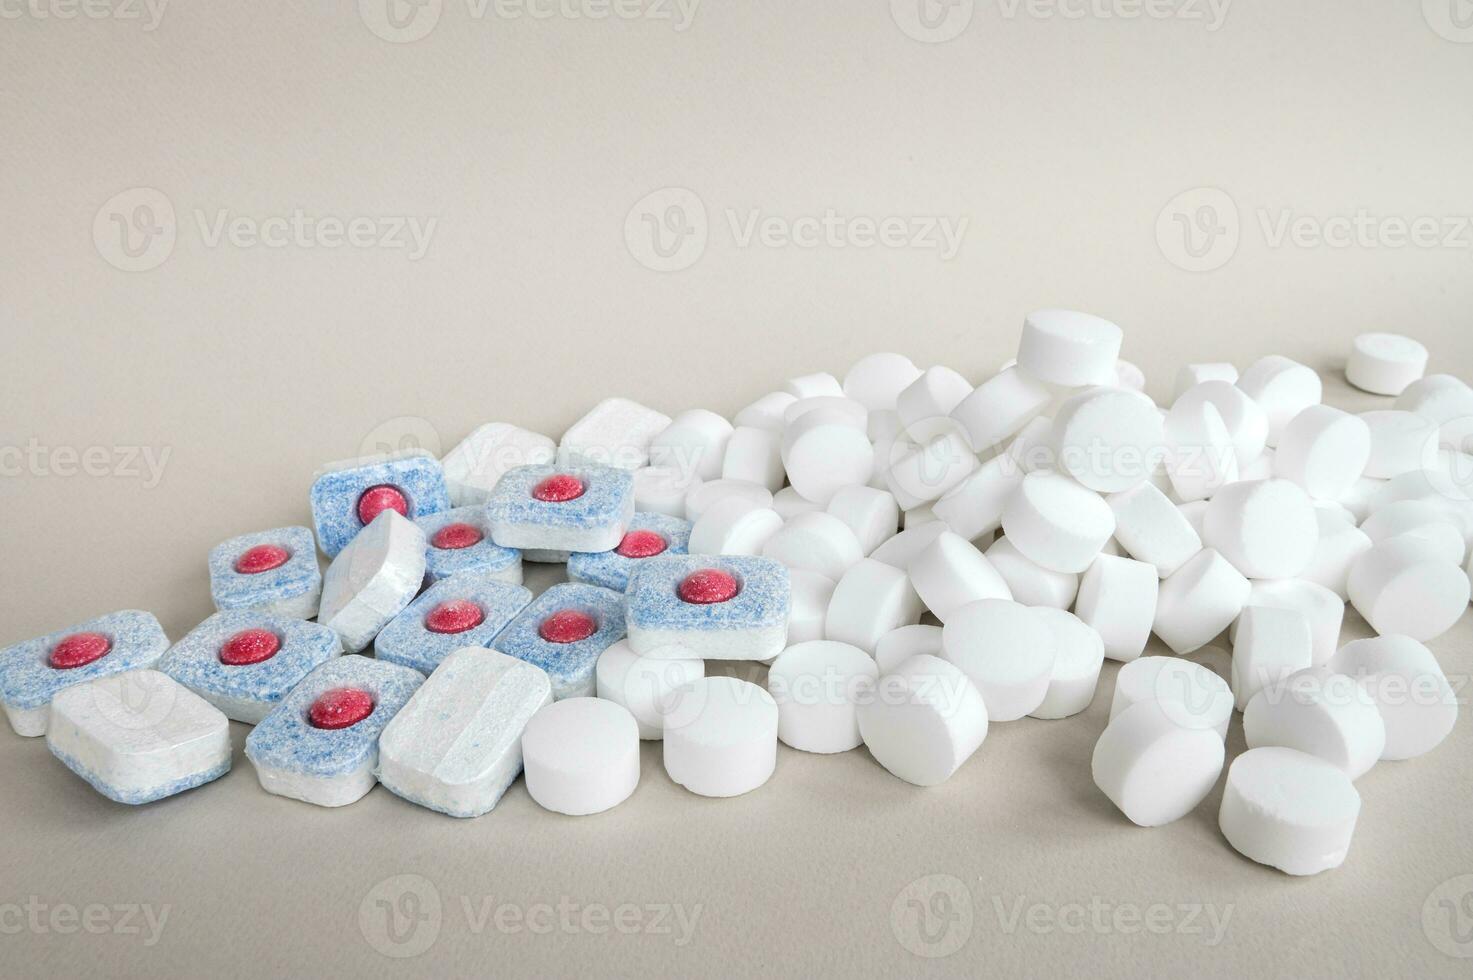 kemisk tabletter för de diskmaskin. färgad kapslar är diskmaskin säker. foto